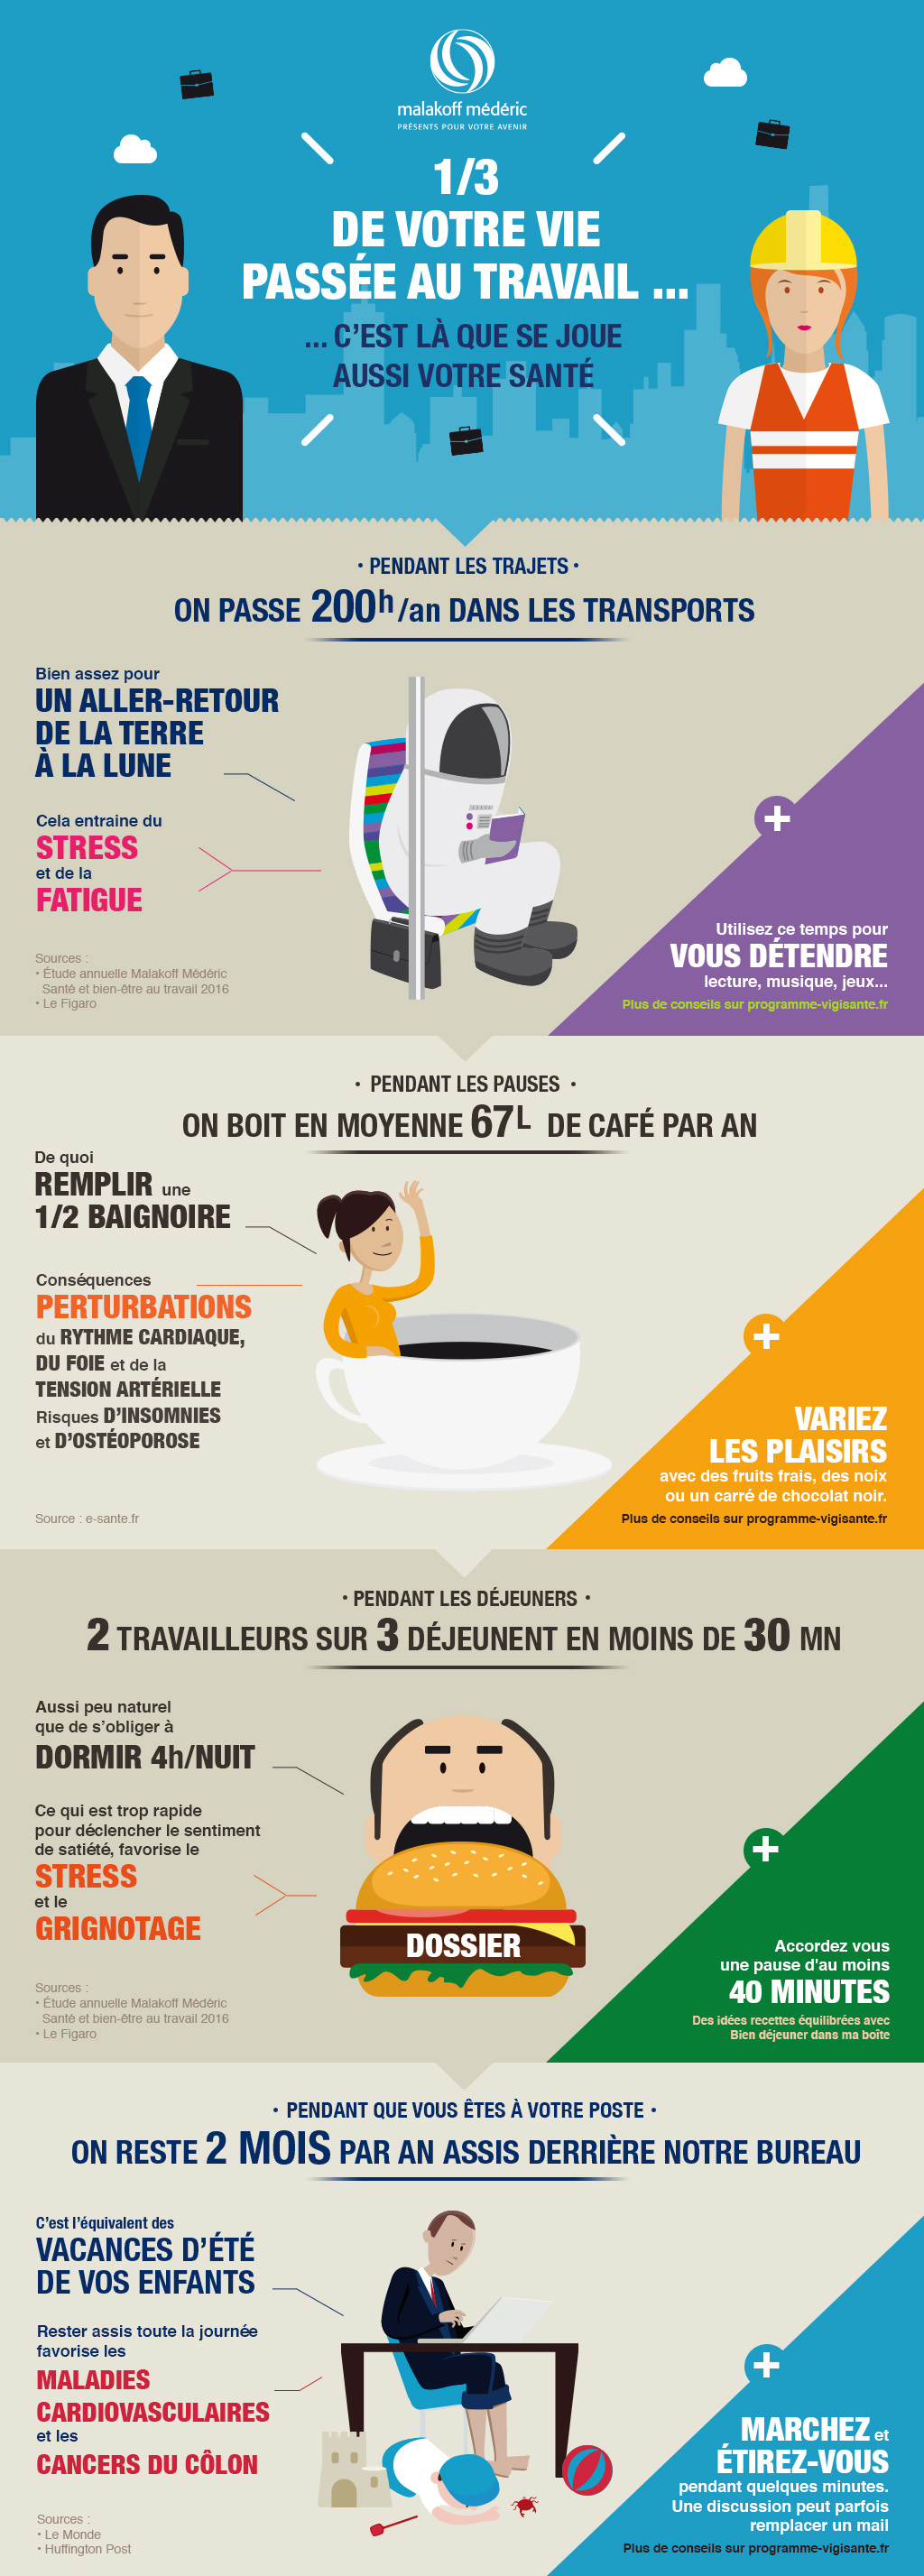 Infographie Malakoff Mederic sur la santé au travail